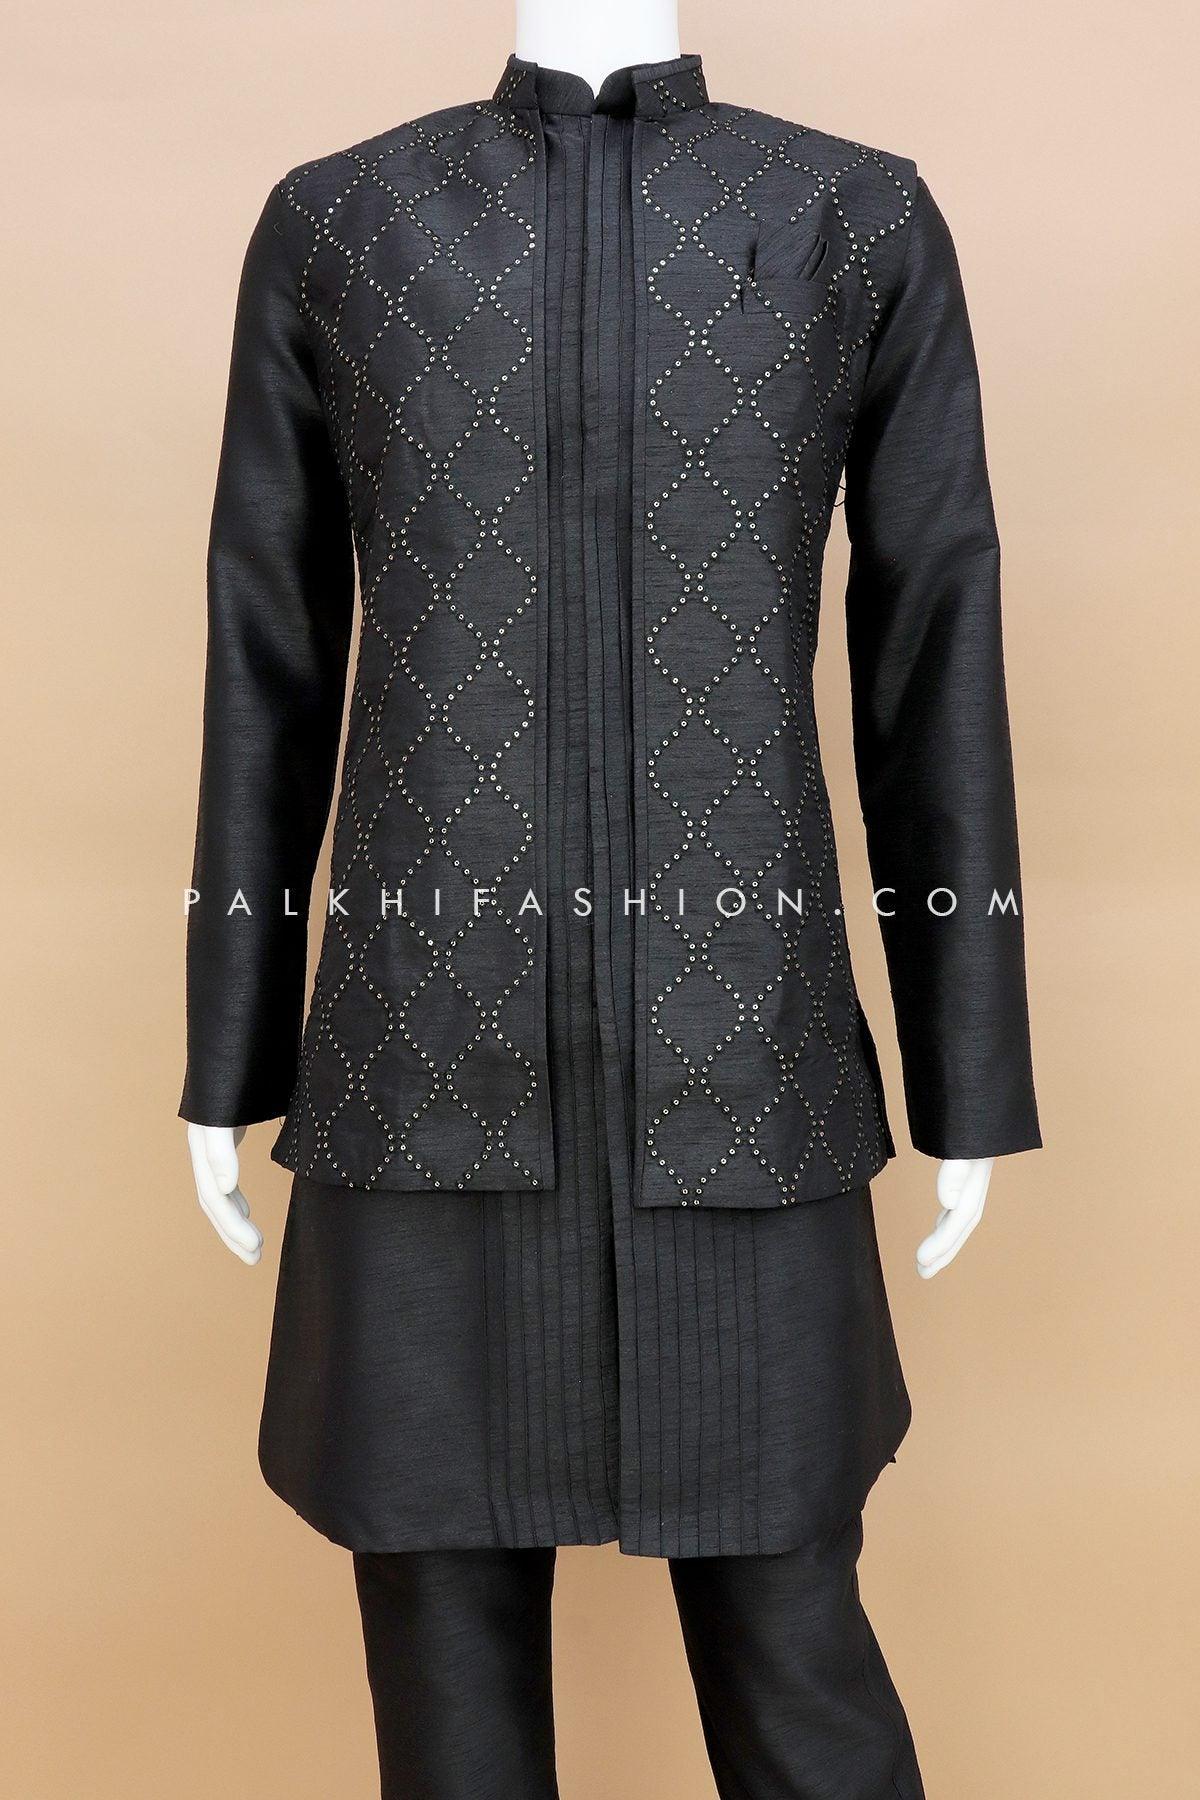 Explore Six Elegant Ways to Style Kurta Pajama with a Jacket | by Exotic  India | Medium